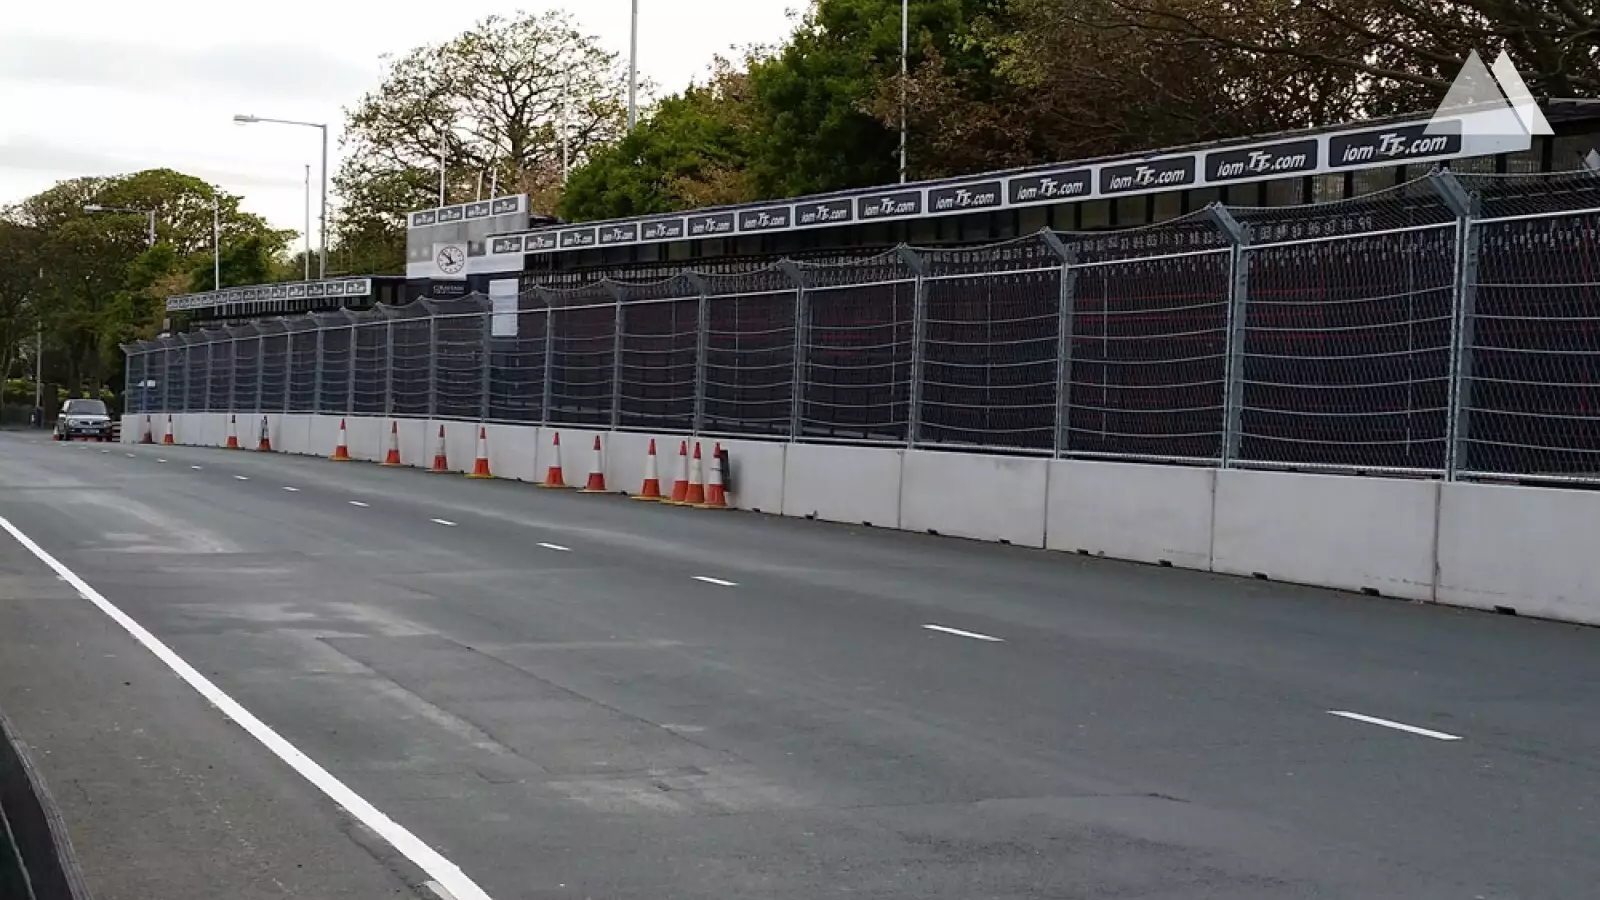 Tory wyścigowe - TT Isle of Man 2015